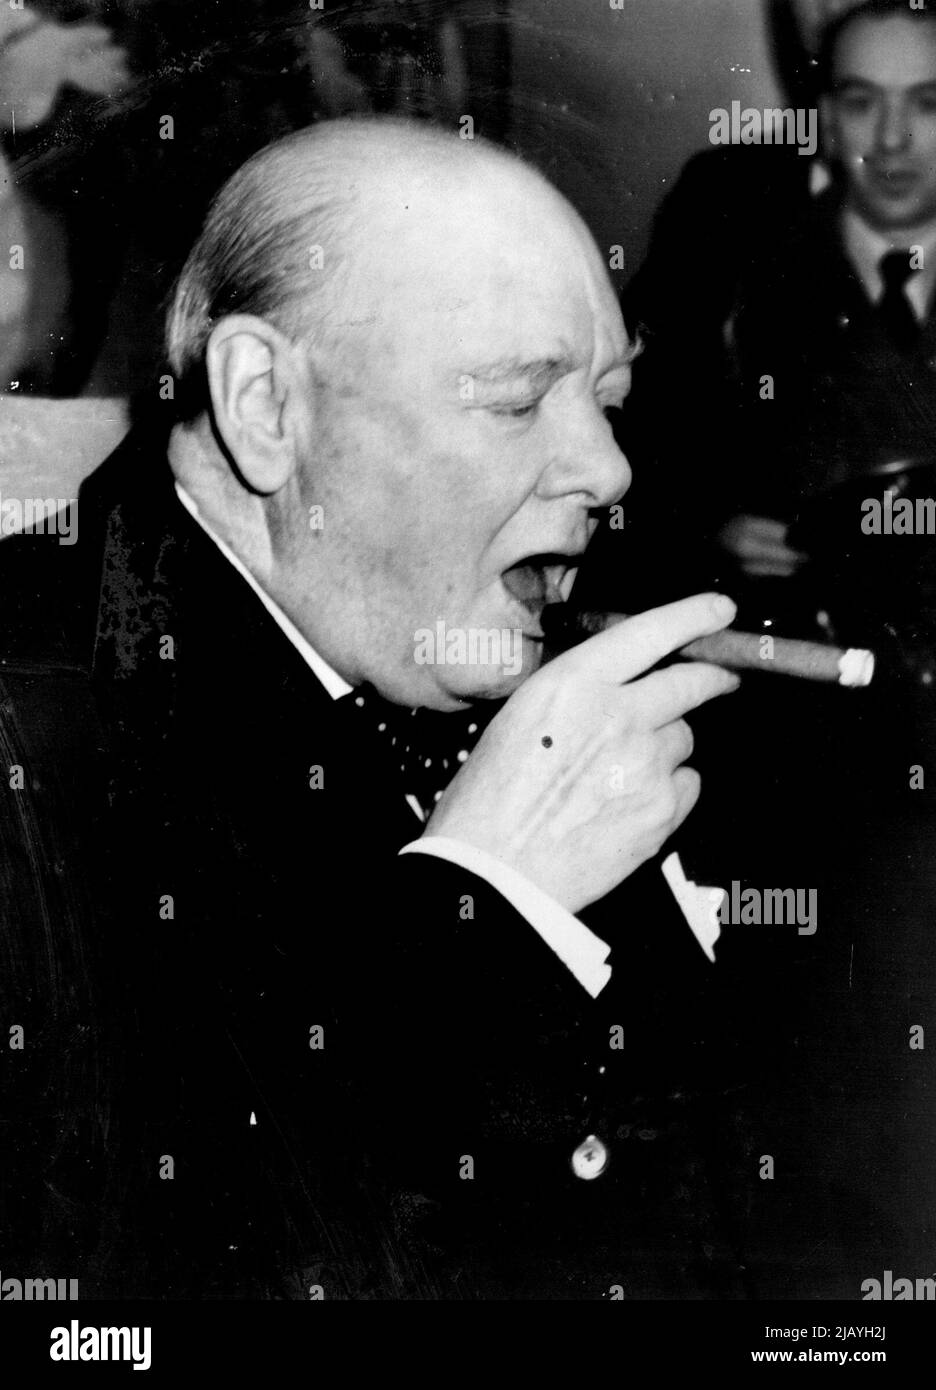 Mr. Churchill und seine Zigarre: Mr. Winston Churchill, der Premierminister, lässt sich zurück, um mit offensichtlichem Vergnügen eine seiner Zigarren zu genießen, als er an Bord der Linie Queen Mary nach seinem Urlaub in Jamaika, Britisch-Westindien, wieder in Southampton ankommt. 29. Januar 1953. (Foto von Planet News Ltd.). Stockfoto